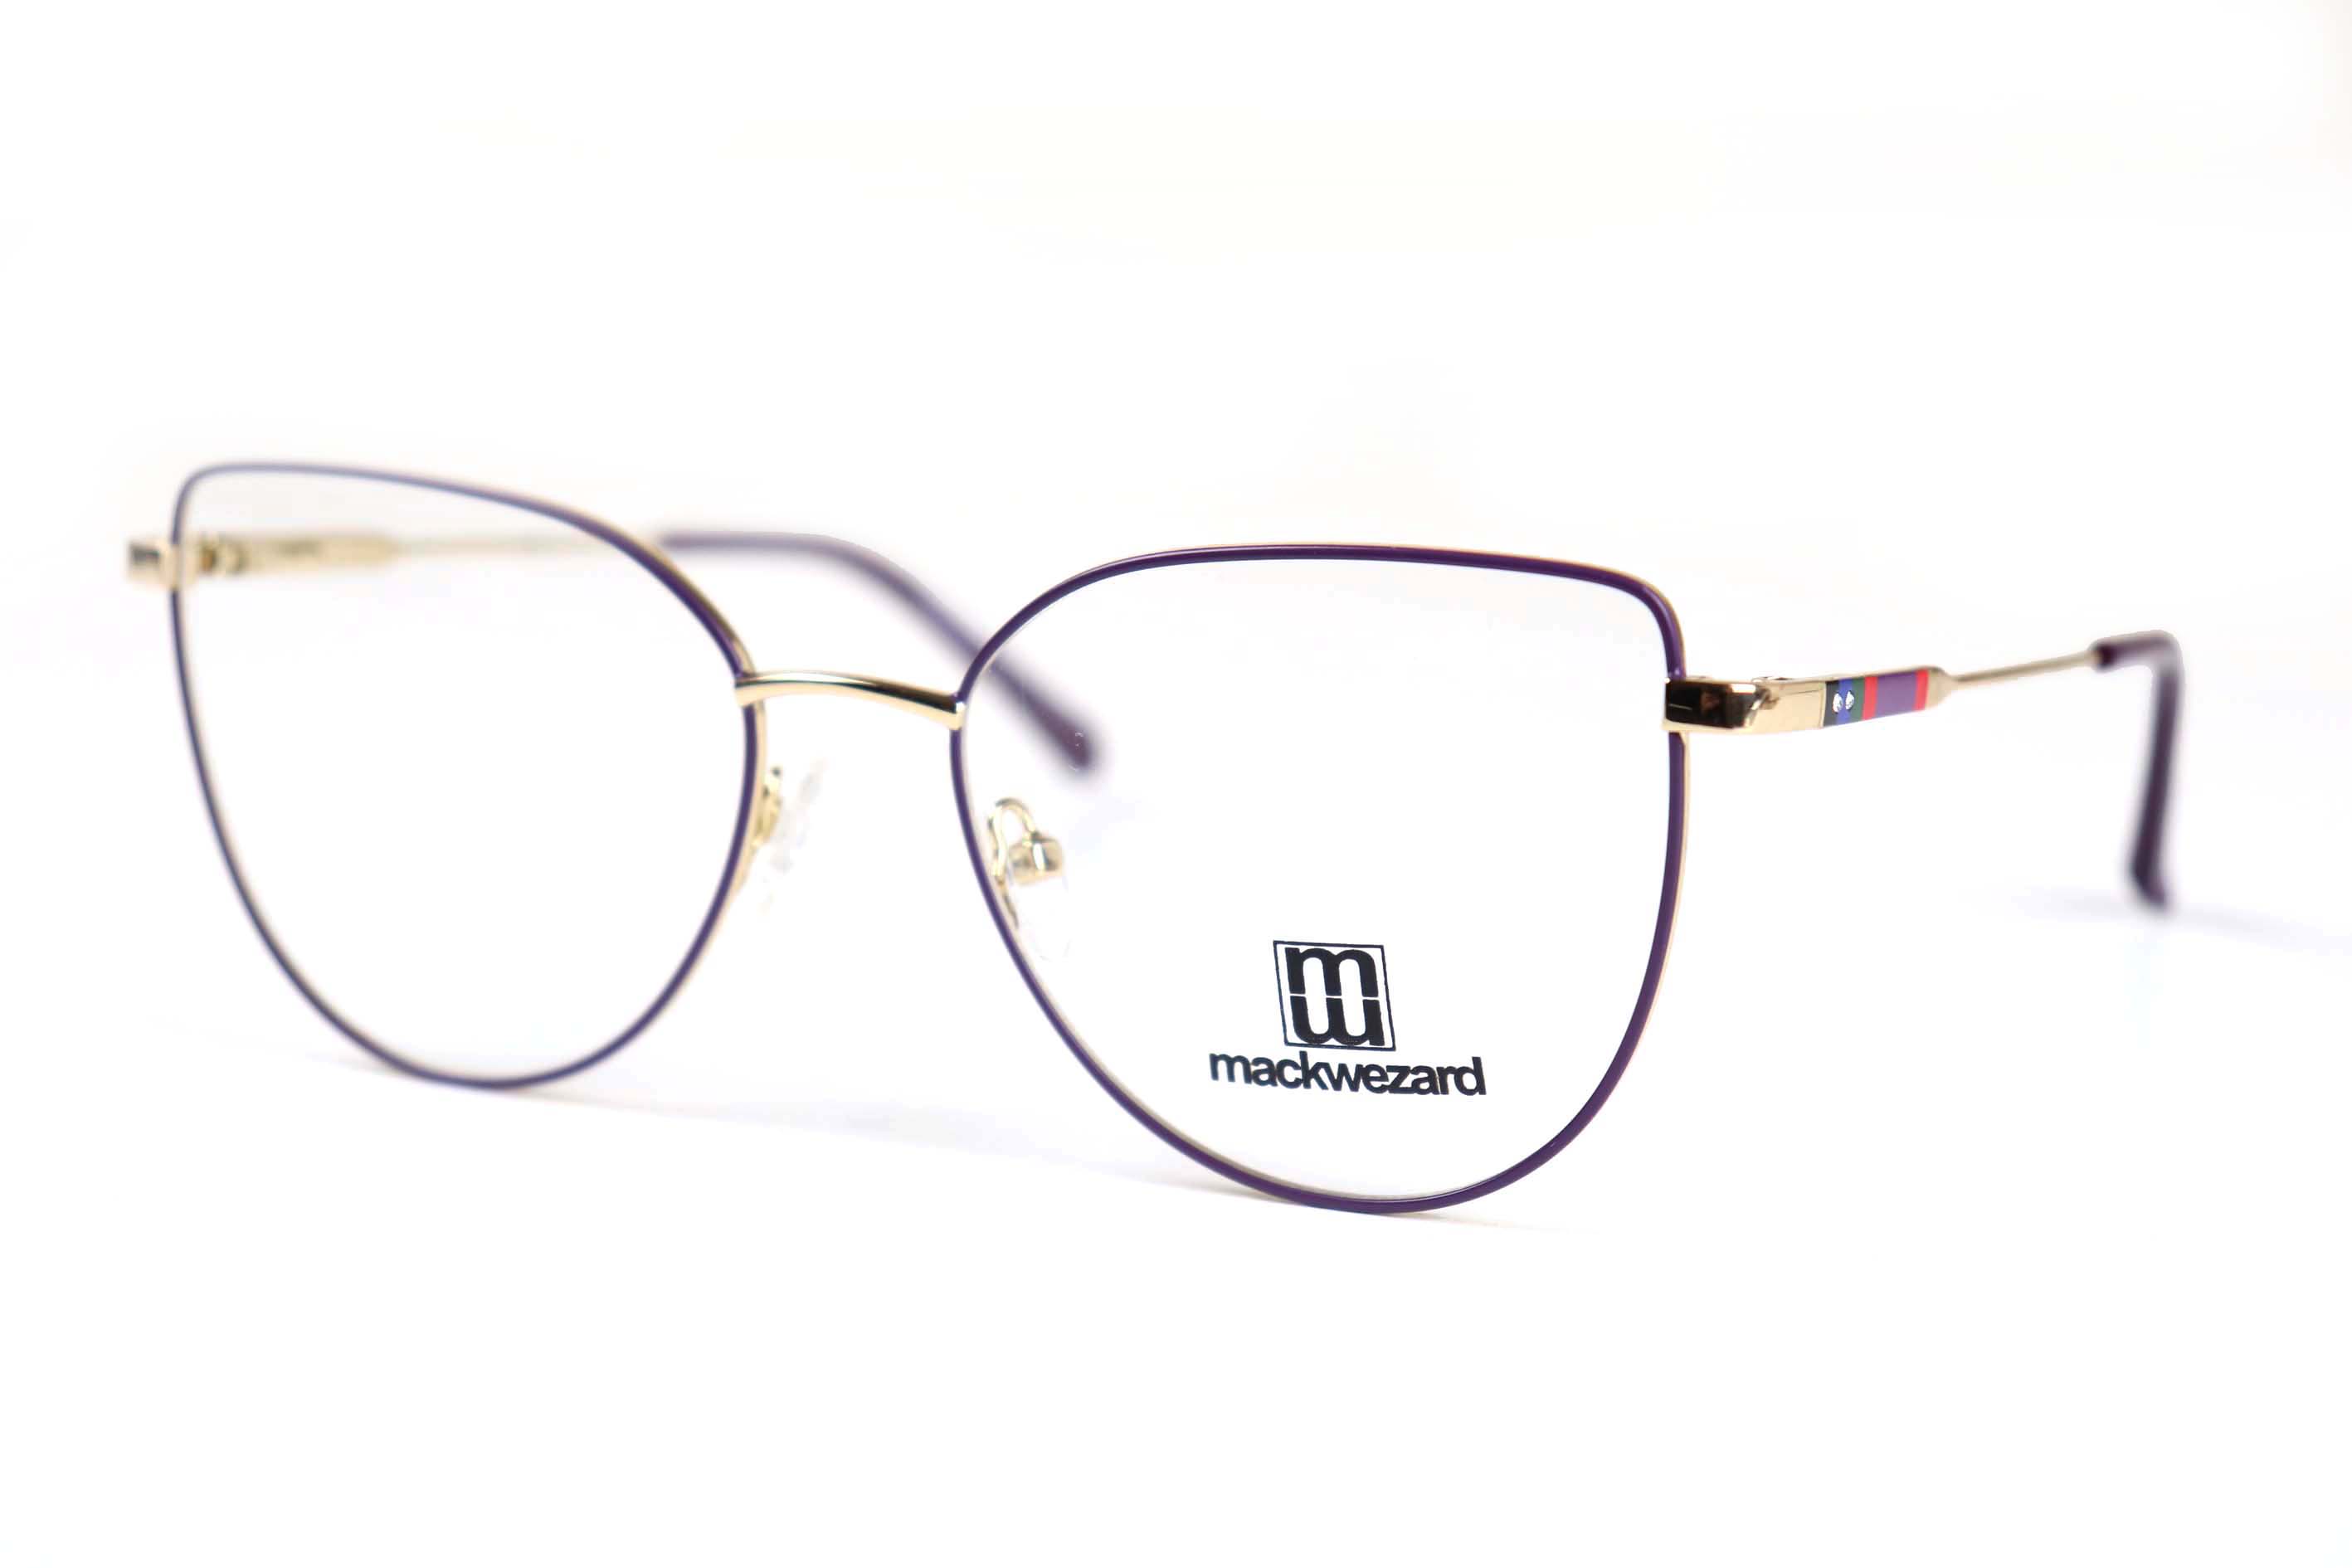 Mackwezard Eyeglasses- 1007-C4-53-18-140